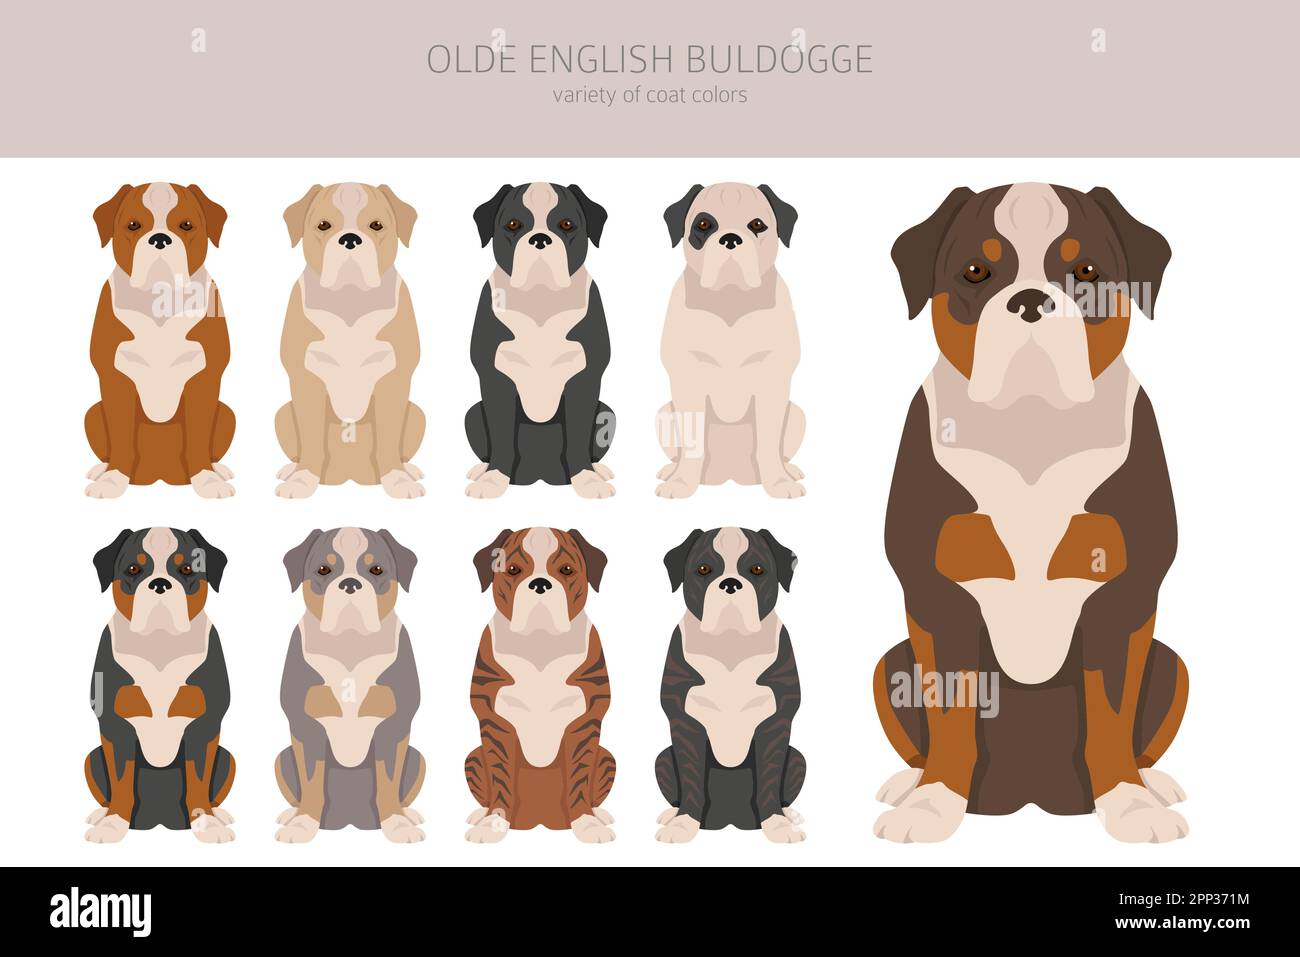 Olde English Bulldogge, Leavitt Bulldog clipart.Différentes poses, ensemble de couleurs de pelage.Illustration vectorielle Illustration de Vecteur